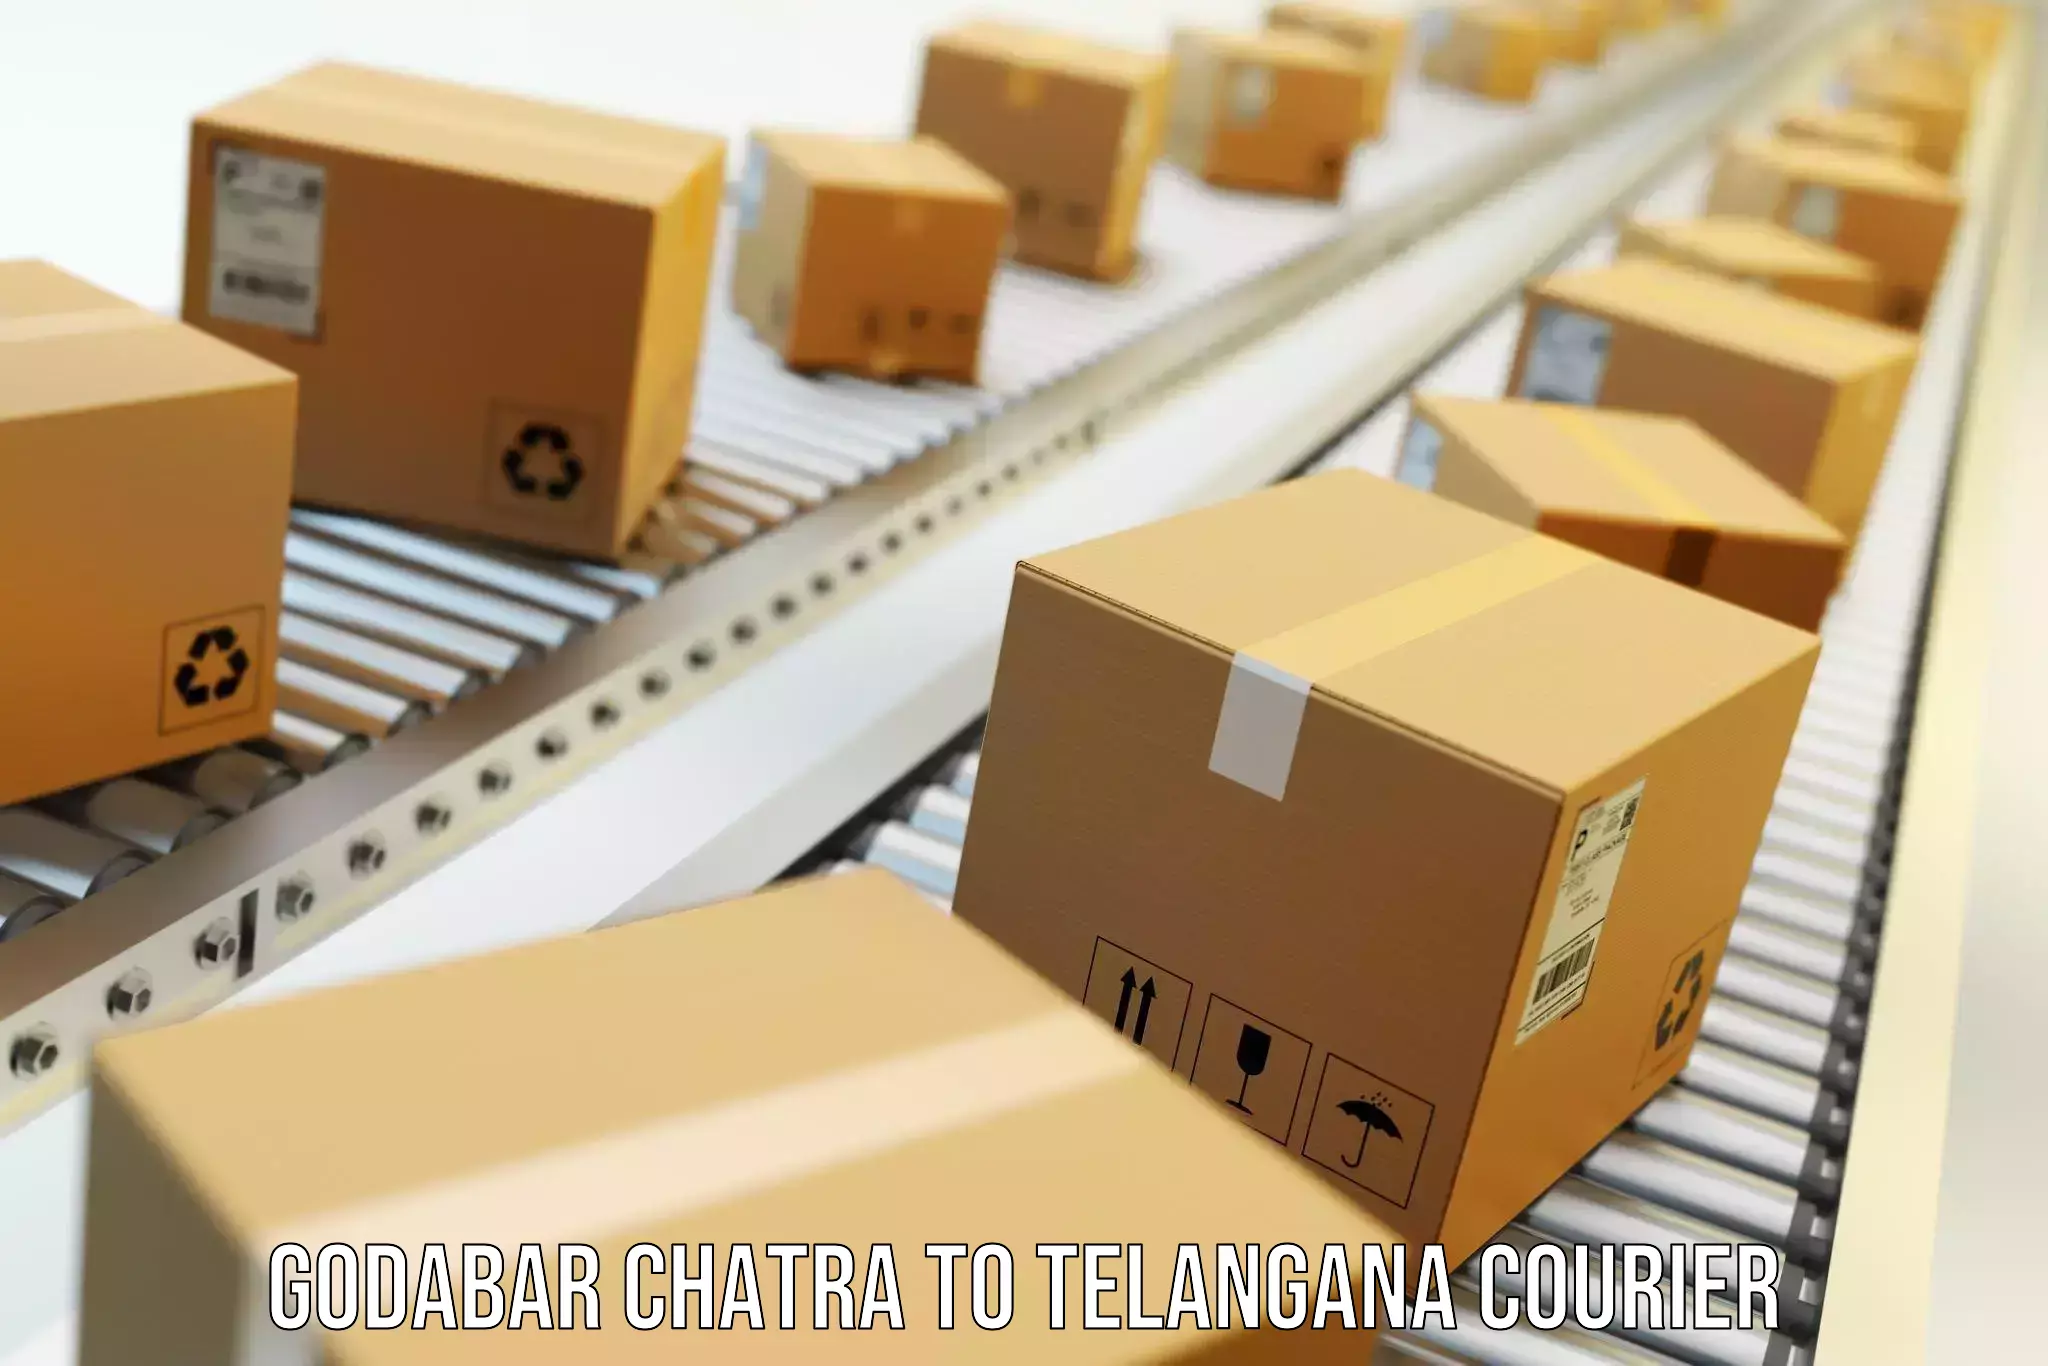 Efficient moving company Godabar Chatra to Shamshabad